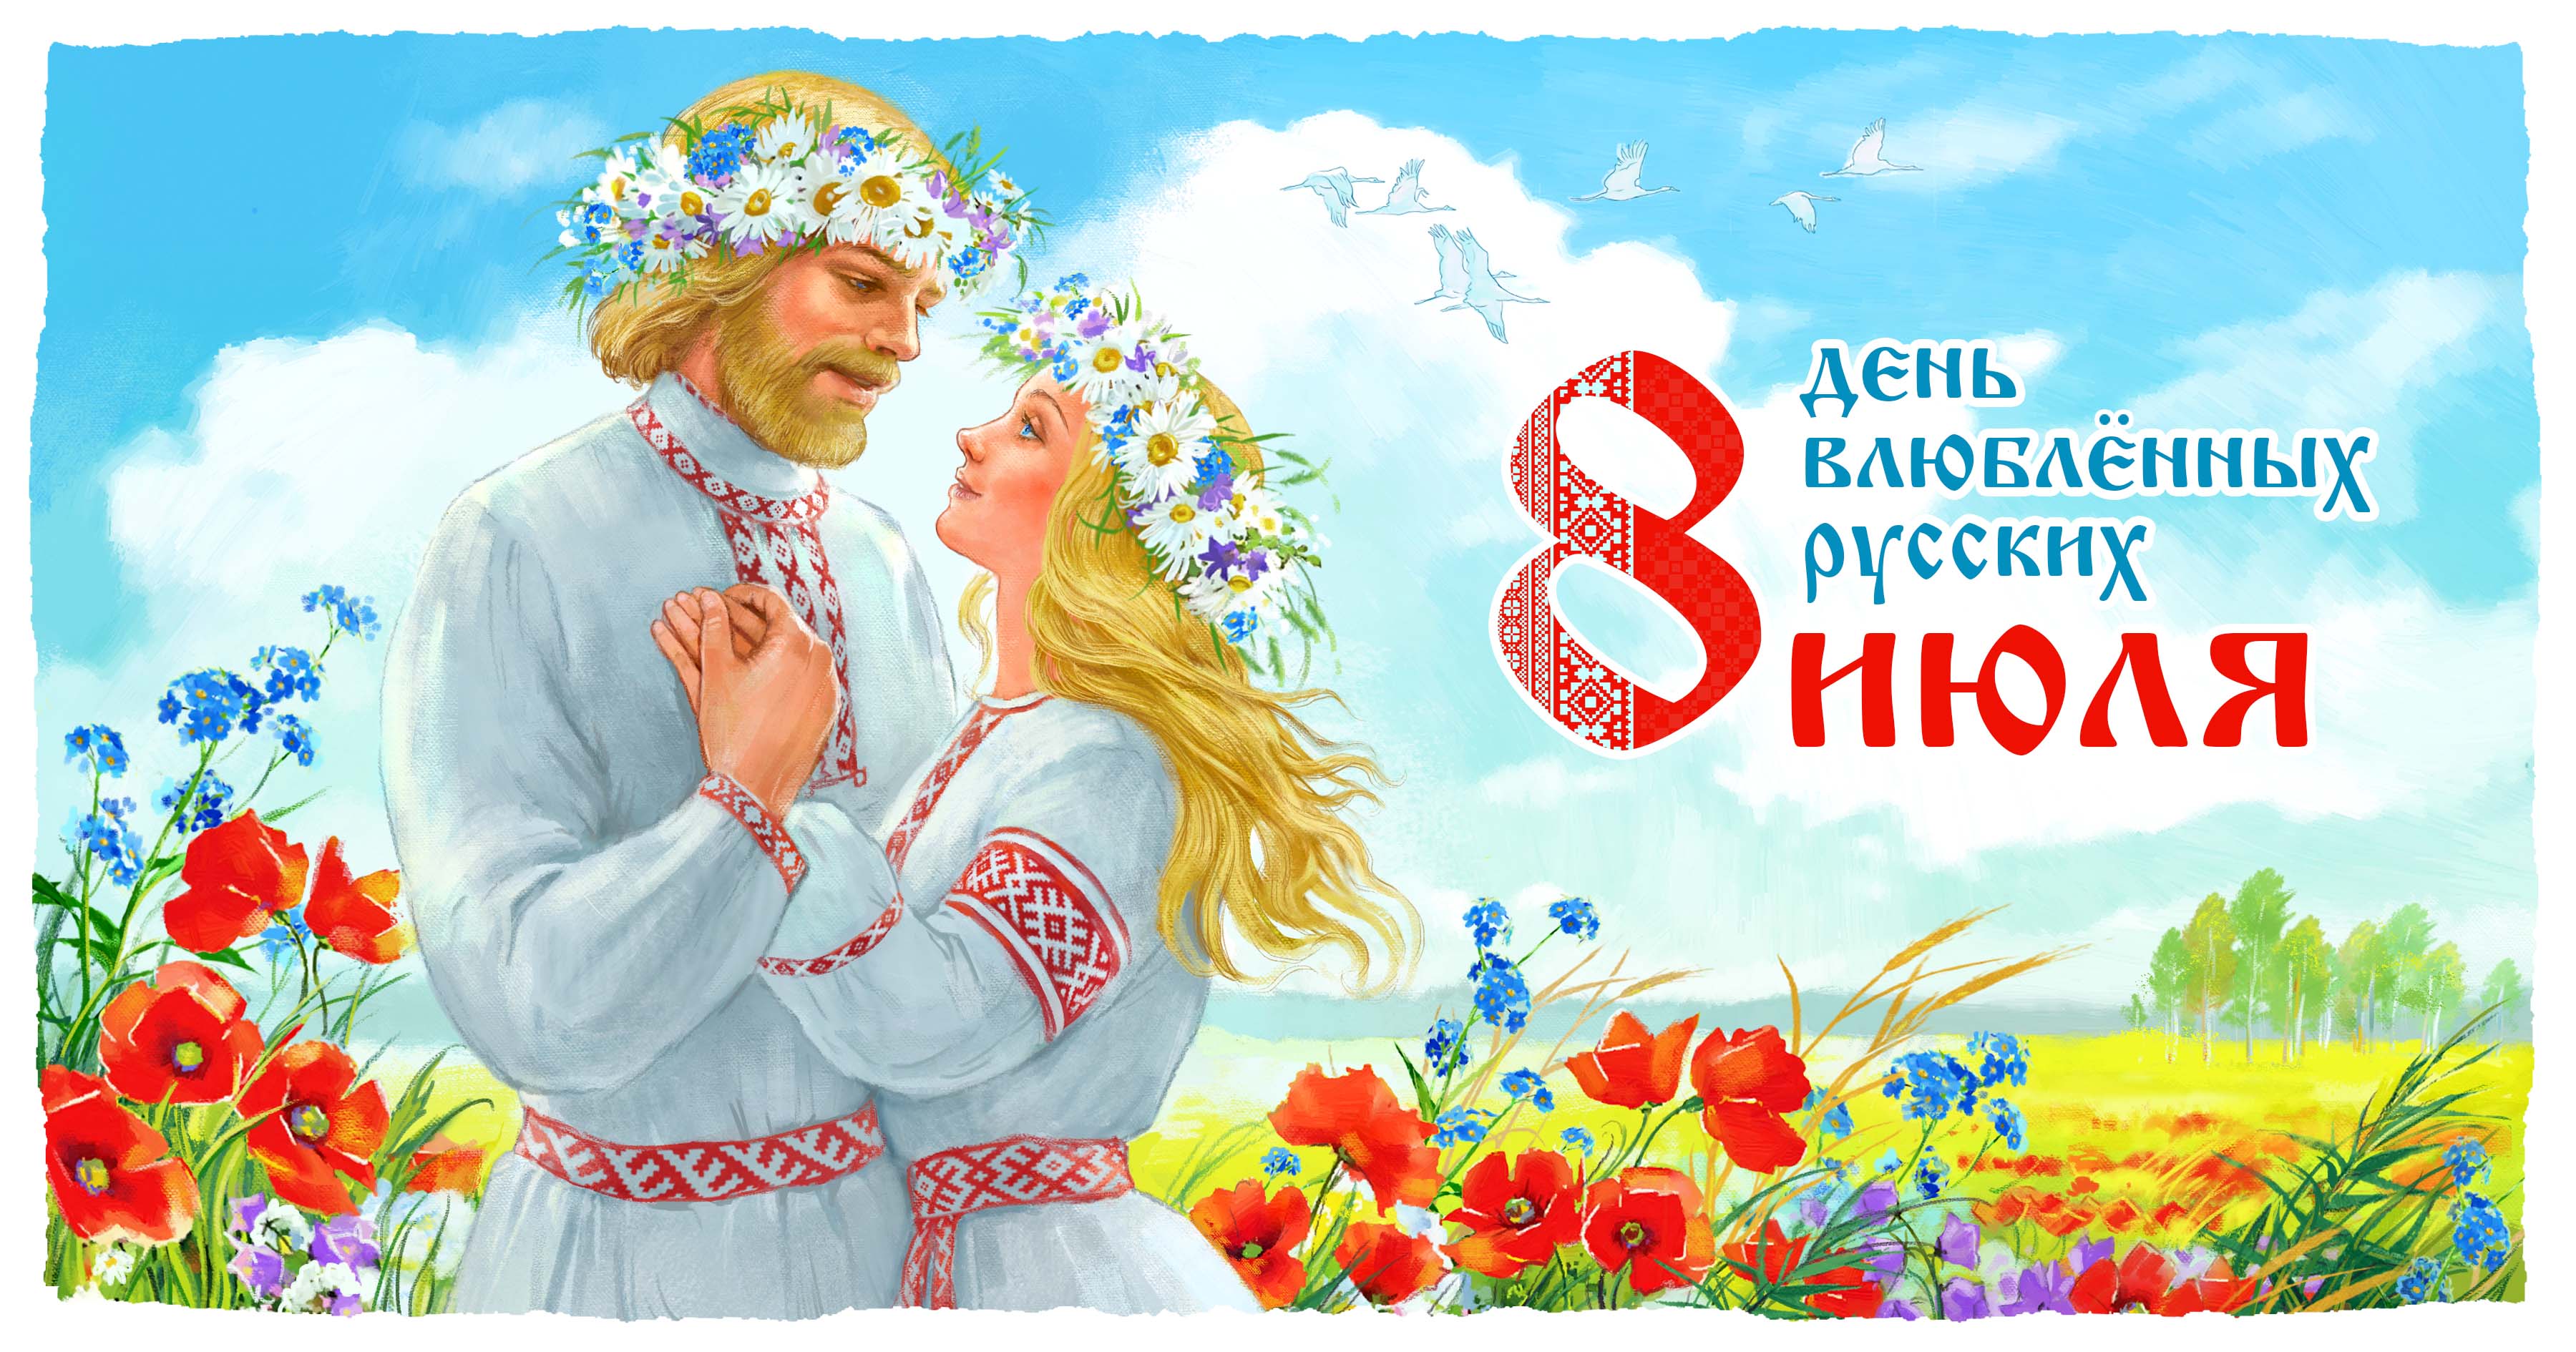 8 июля день влюблённых русских русский день влюблённых